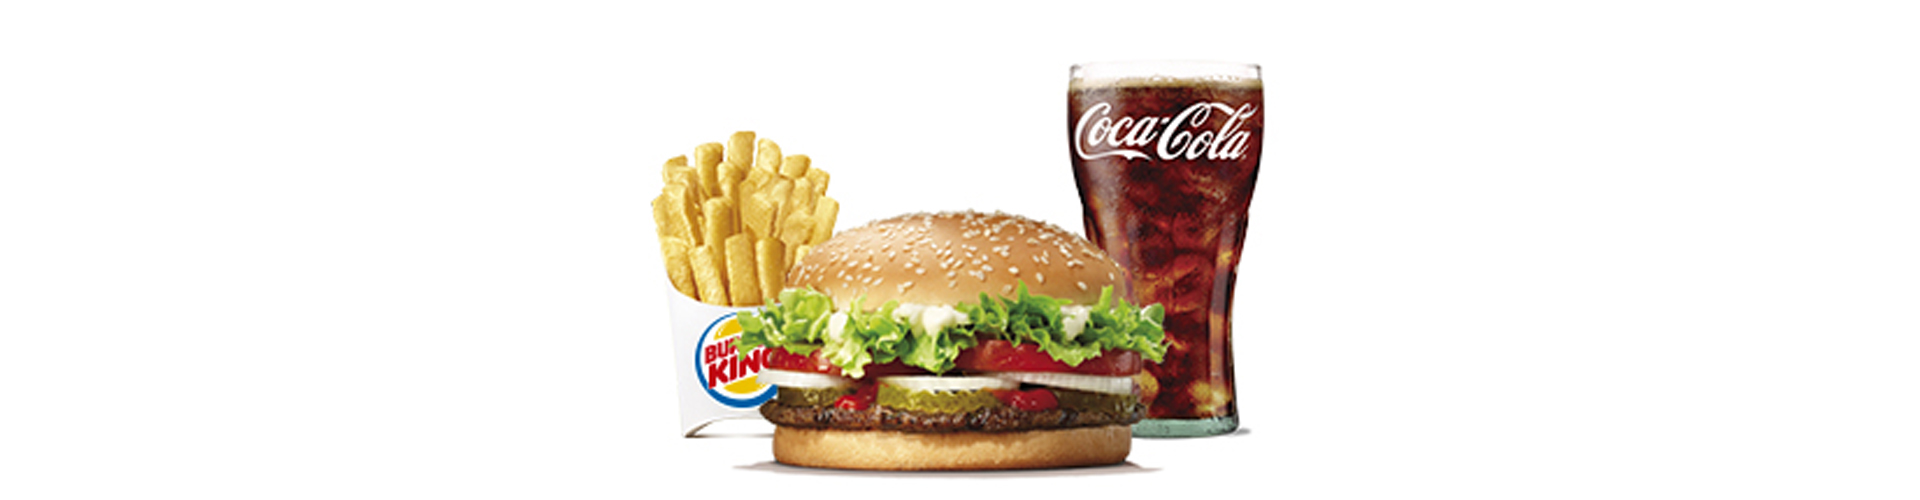 menu-whopper-burgerking-40001707-agua-ensalada